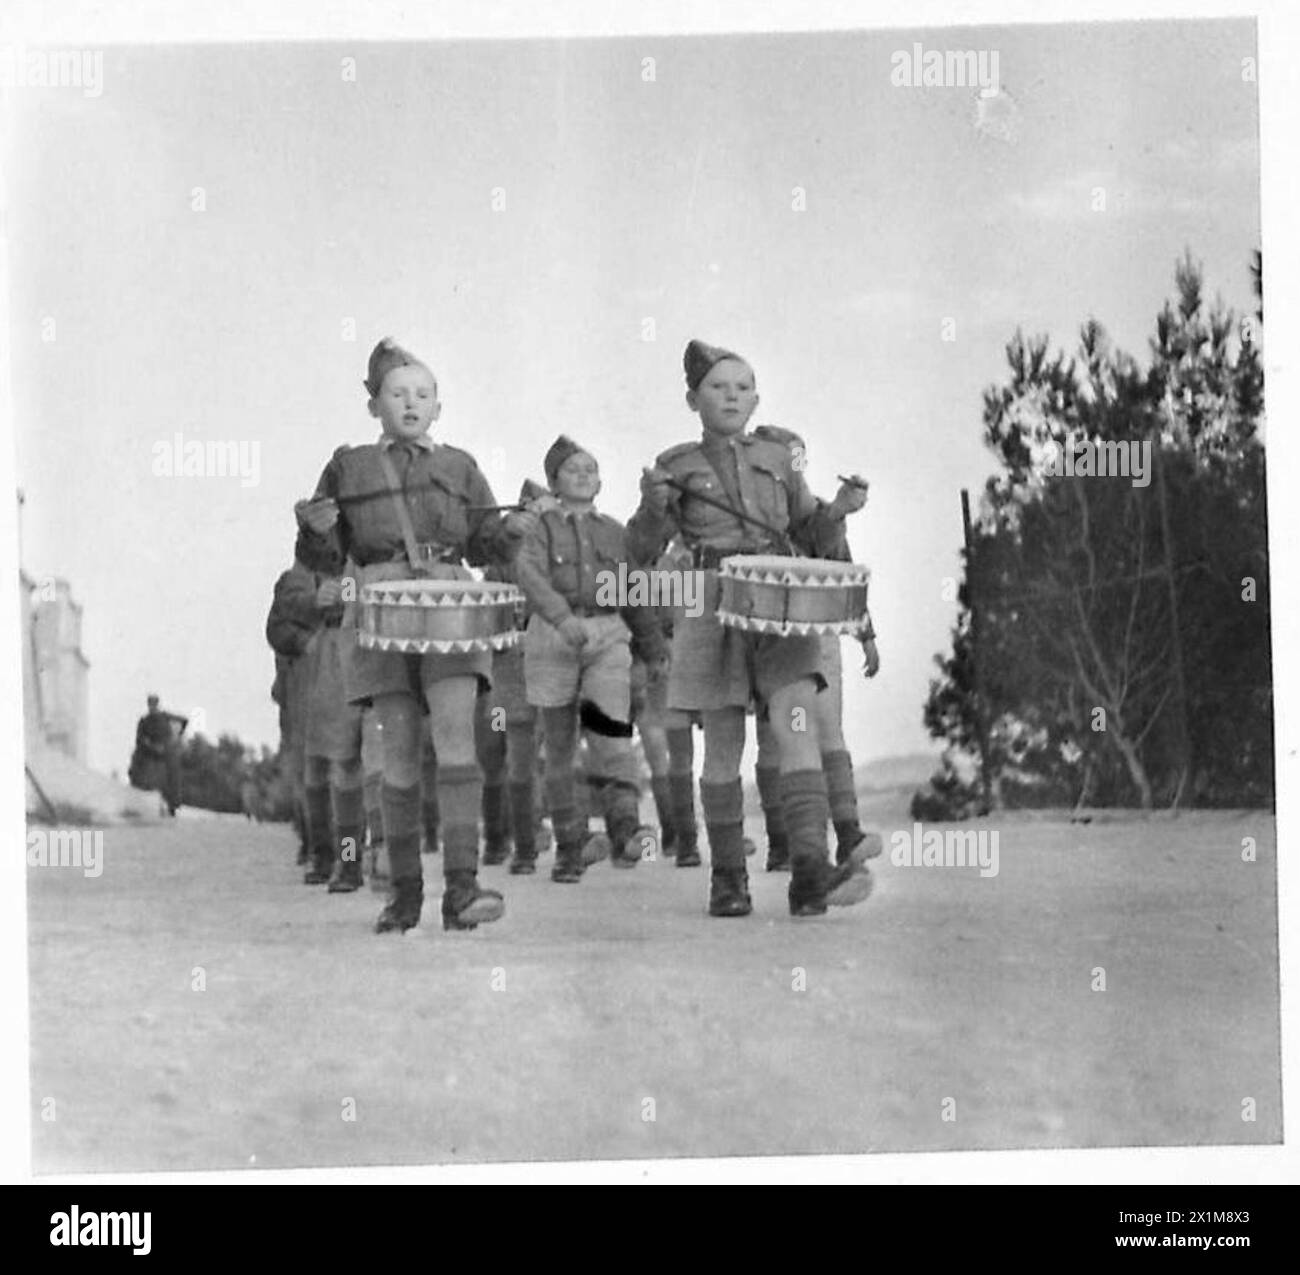 DIE POLNISCHE ARMEE IM NAHEN OSTEN, 1942-1943 - die Jungen in Marschfolge mit ihren zwei kleinen Trommlern an ihrem Kopf, marschieren zur Salutbasis. Sie begrüßten den General mit dem Marschlied „Czołem panie Generale“, was bedeutet: „Wir grüßen Sie, General“. Die chinesische Regierung Palästina, Generalmajor Douglas Fitzgerald McConnel, besuchte die polnische Knabenschule in Nazareth. Hier werden polnische Flüchtlingsjungen (Waisen, die 1939-1940 vom NKWD in die Sowjetunion deportiert und nach dem Sikorski-Mayski-Abkommen nach Persien und Palästina evakuiert wurden) geschult, hauptsächlich in Disziplin, aber auch in den drei „RS“. Sie A Stockfoto